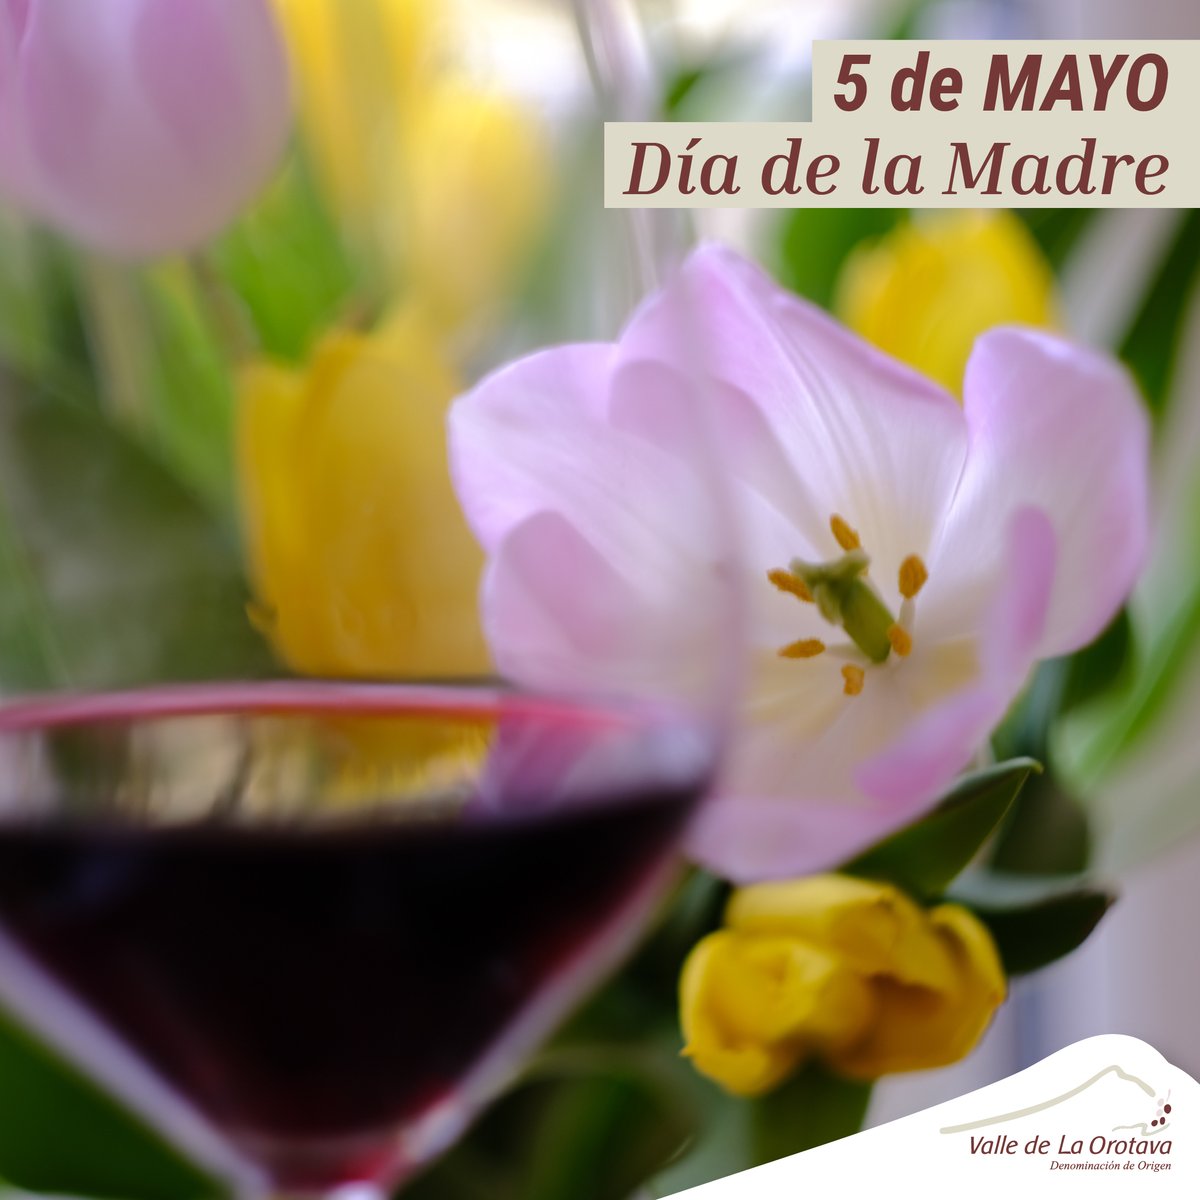 Desde la Denominación de Origen Valle de La Orotava queremos felicitar a todas las madres 😍 A celebrarlo brindando con vinos del Valle de La Orotava 🥂 ¡Feliz Día! ❤️ #VinosValleOrotava #TradicionalmenteUnica #CordonTrenzado #DíaDeLaMadre #FelizDia